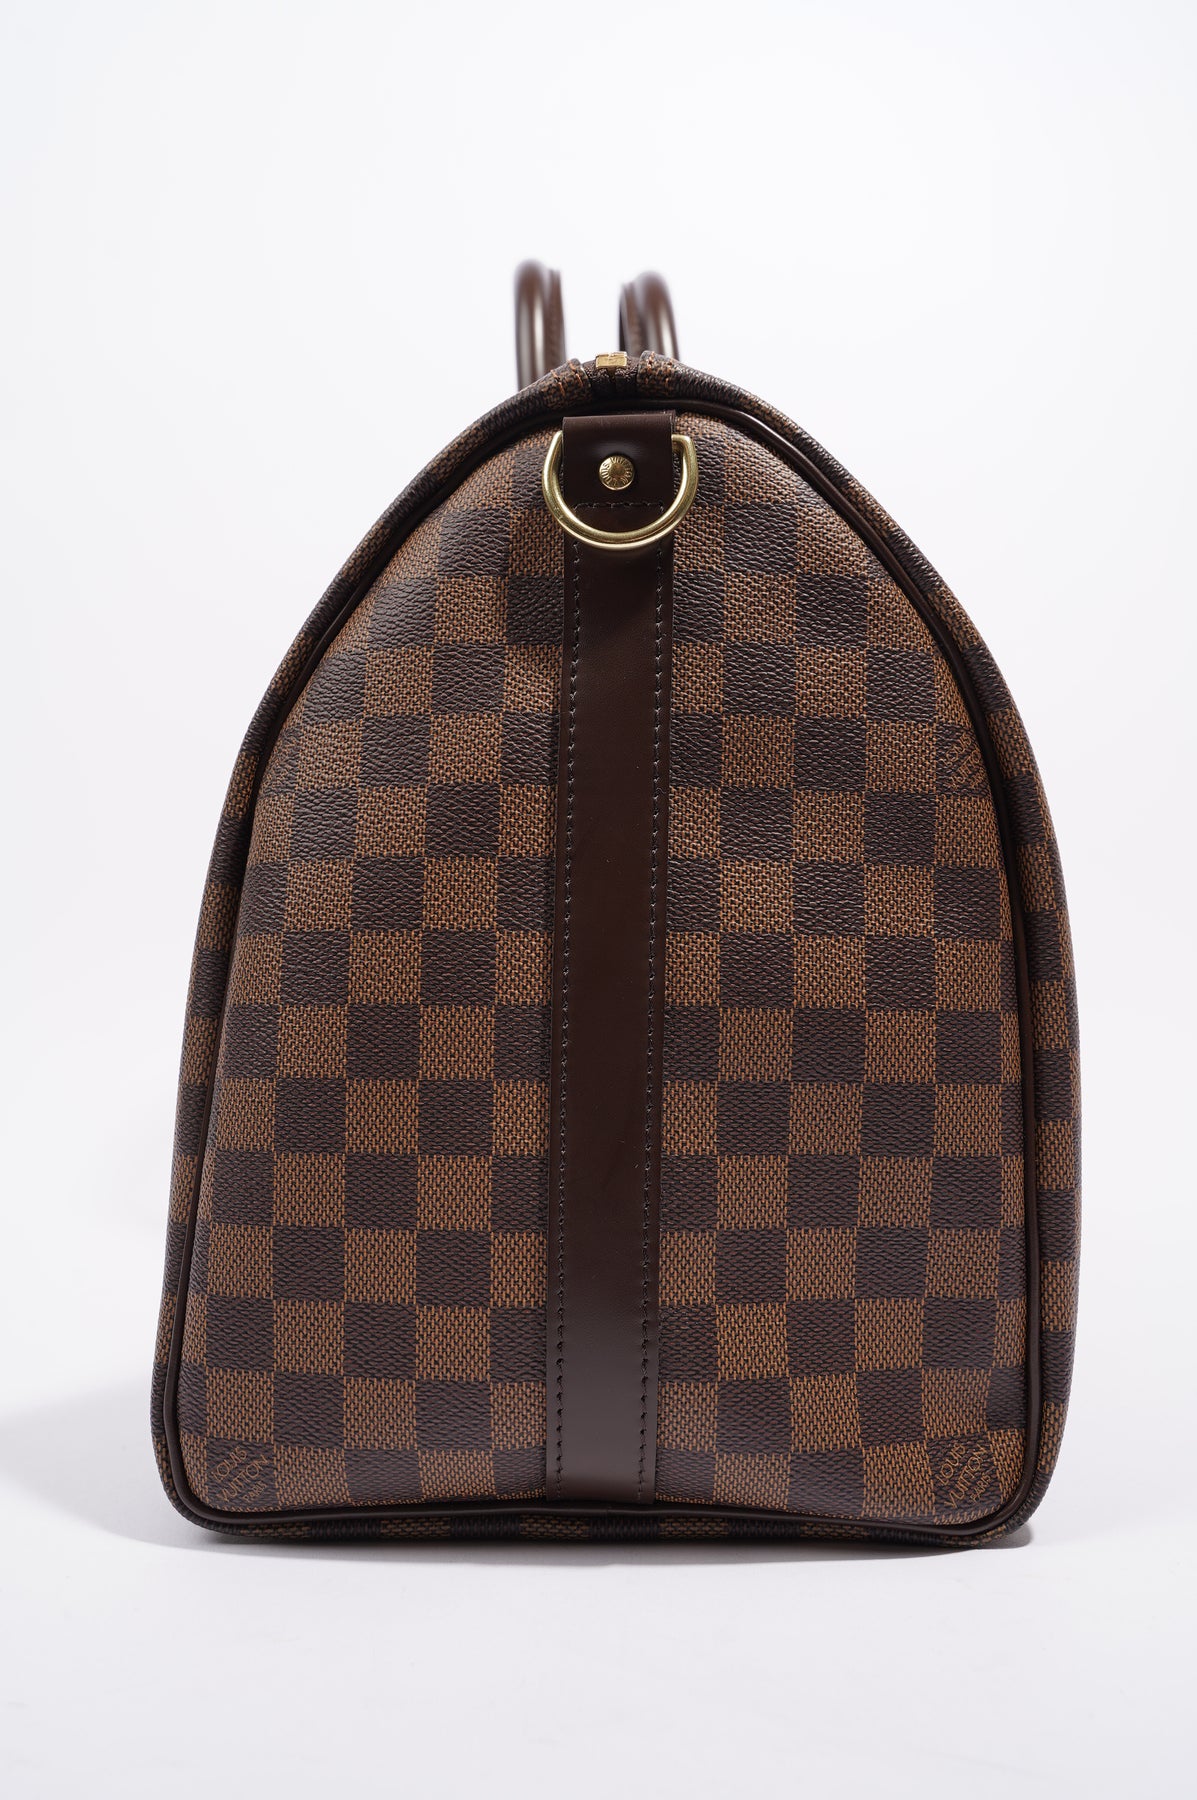 Louis Vuitton - Keepall Bandoulière 45 Bag - Monogram Leather - Bicolore Black Beige - Men - Luxury